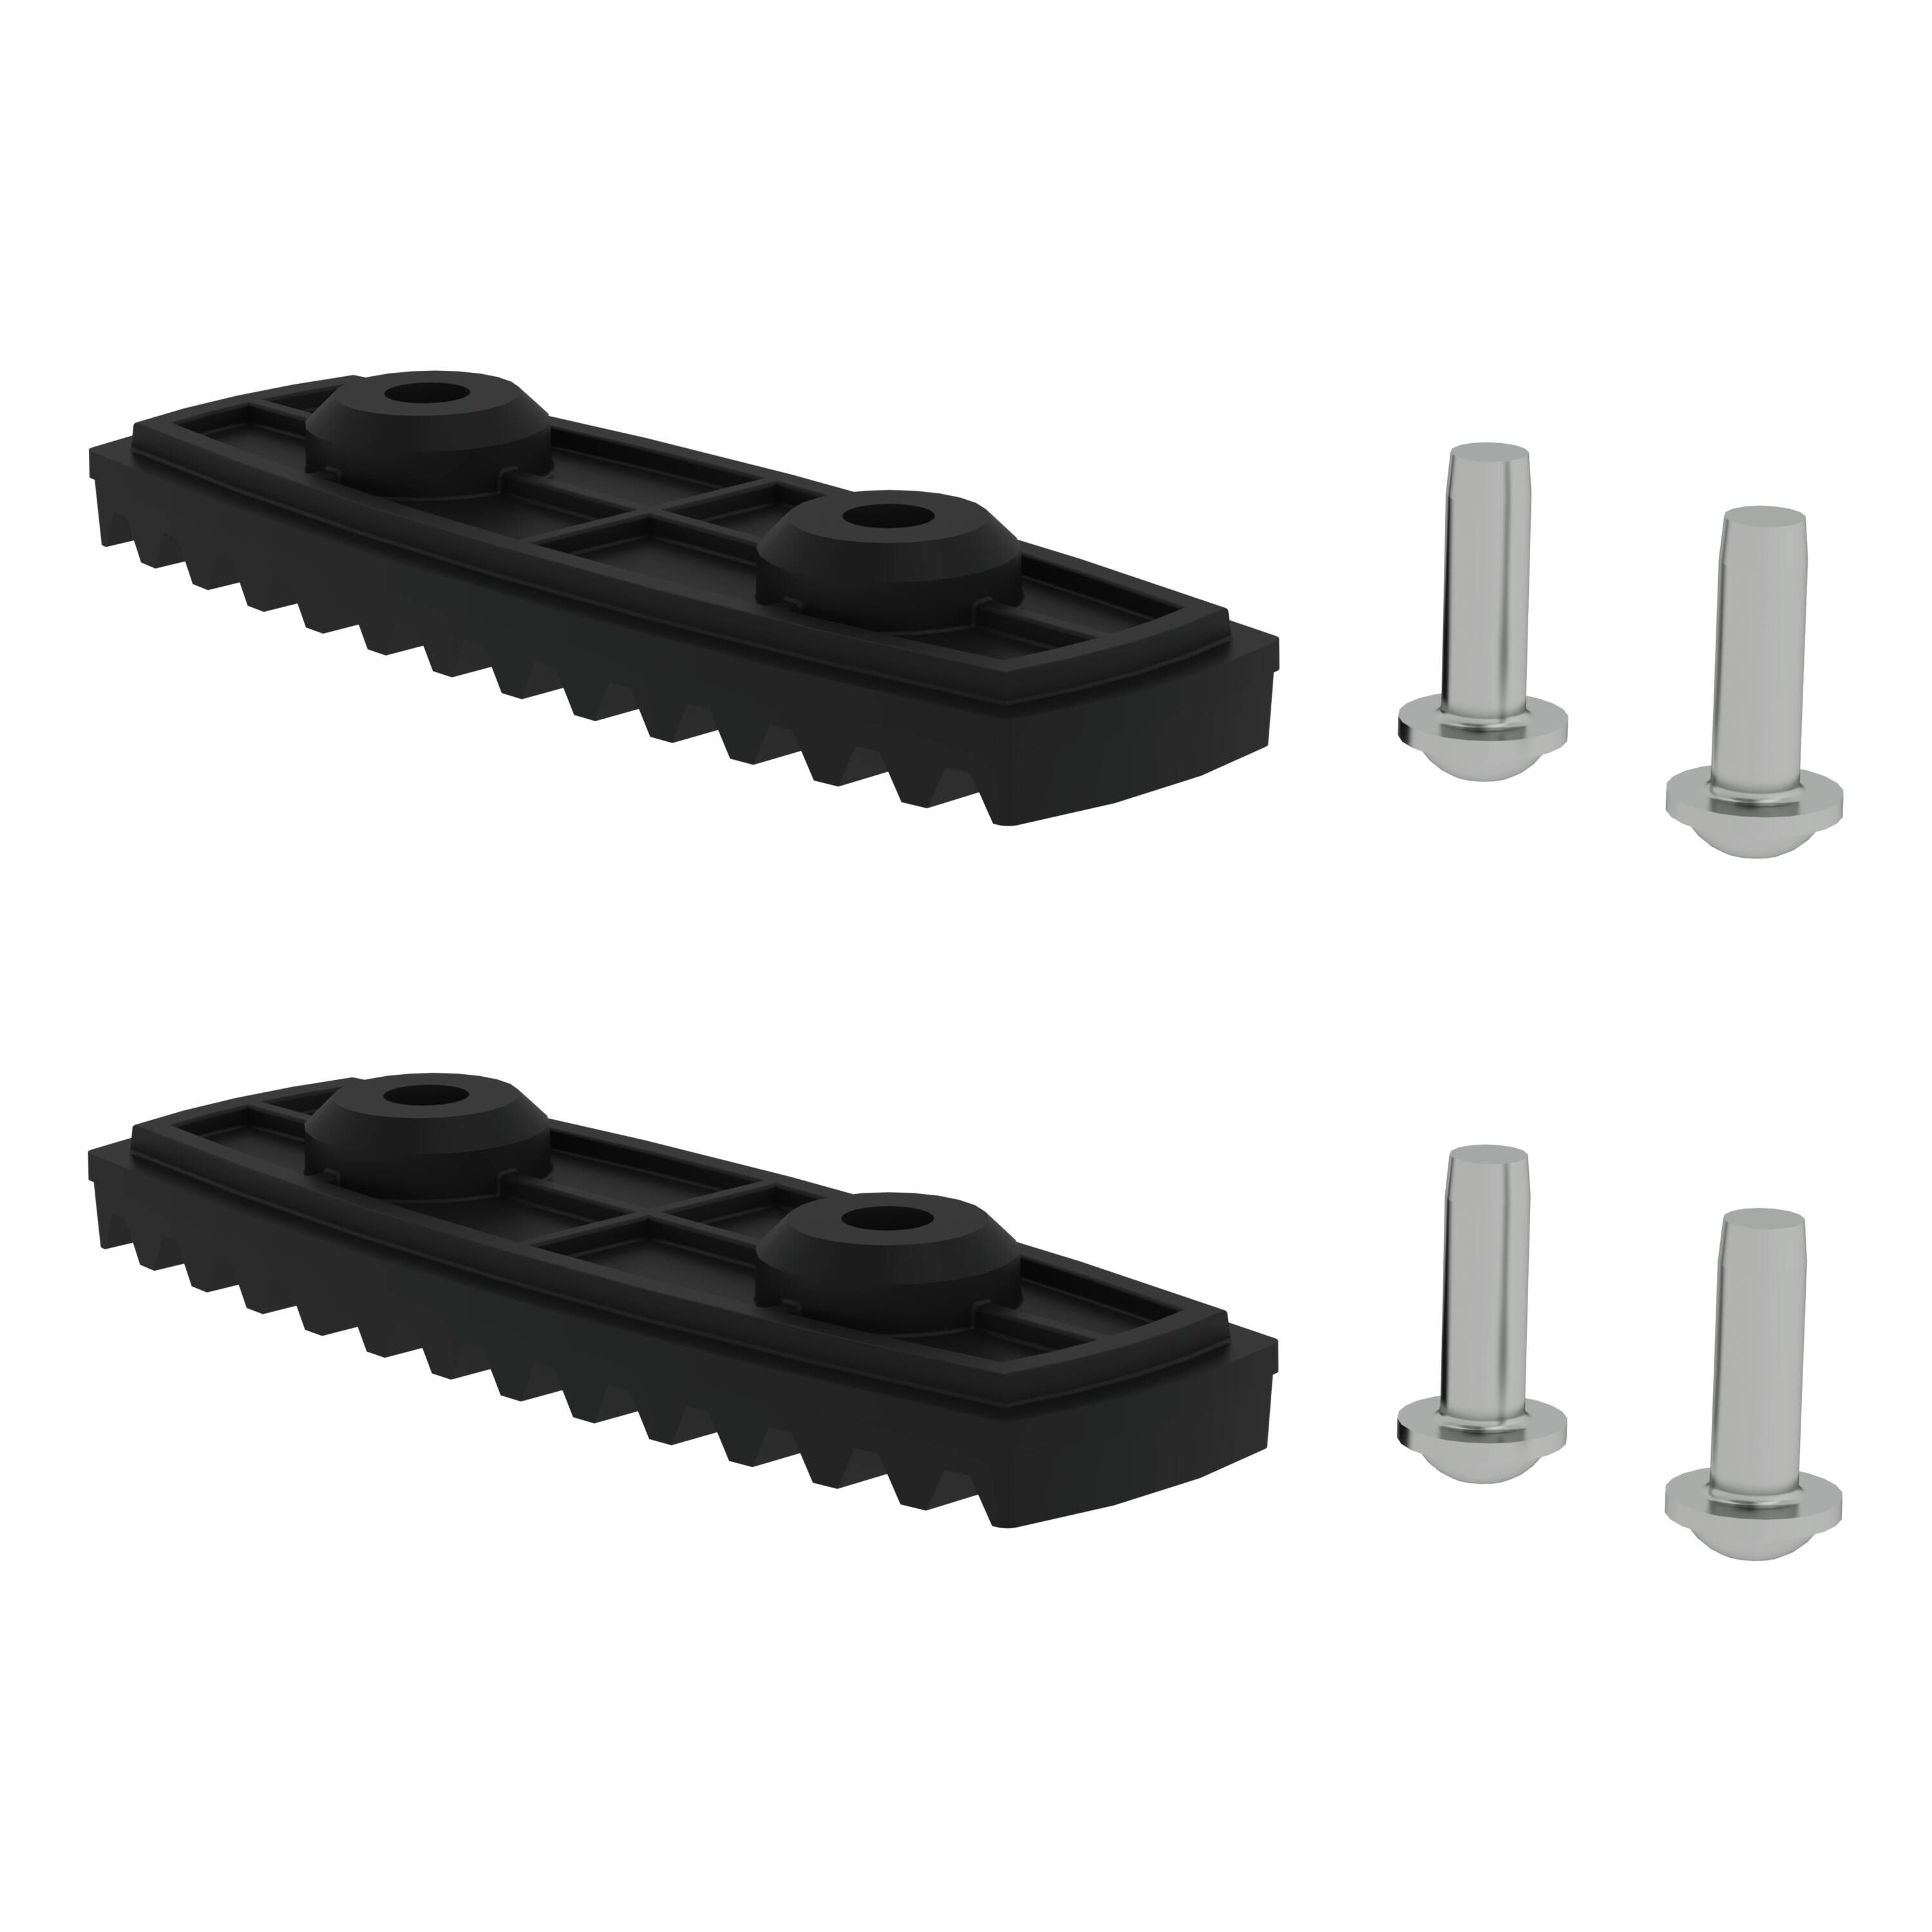 nivello®-Fußplatte elektrisch ableitfähig für Holmhöhe 85/98 mm